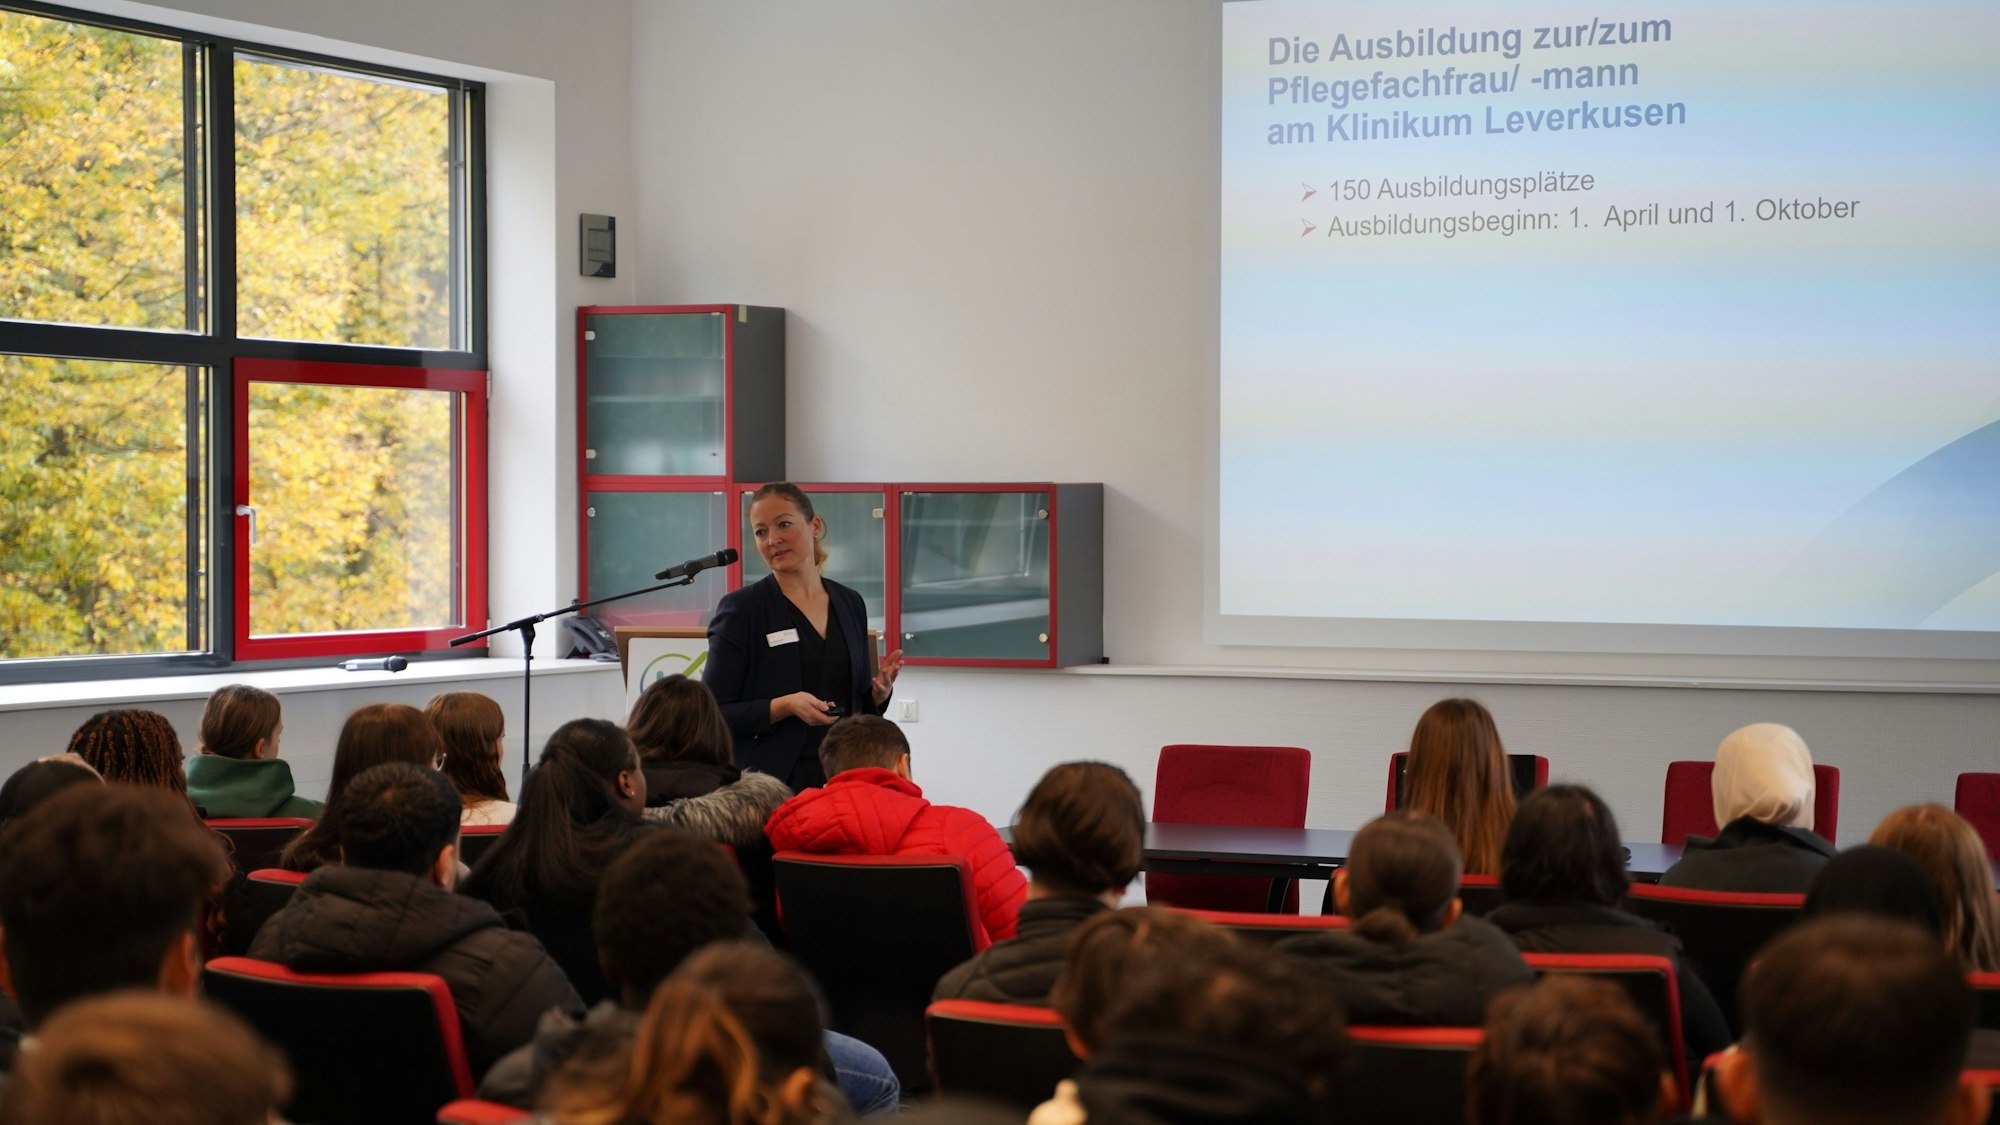 Monika Gruna, Praxiskoordinatorin im Klinikum Leverkusen, erklärt den Schülerinnen und Schülern des Geschwister-Scholl-Berufskollegs Einzelheiten des Pflegeberufs.